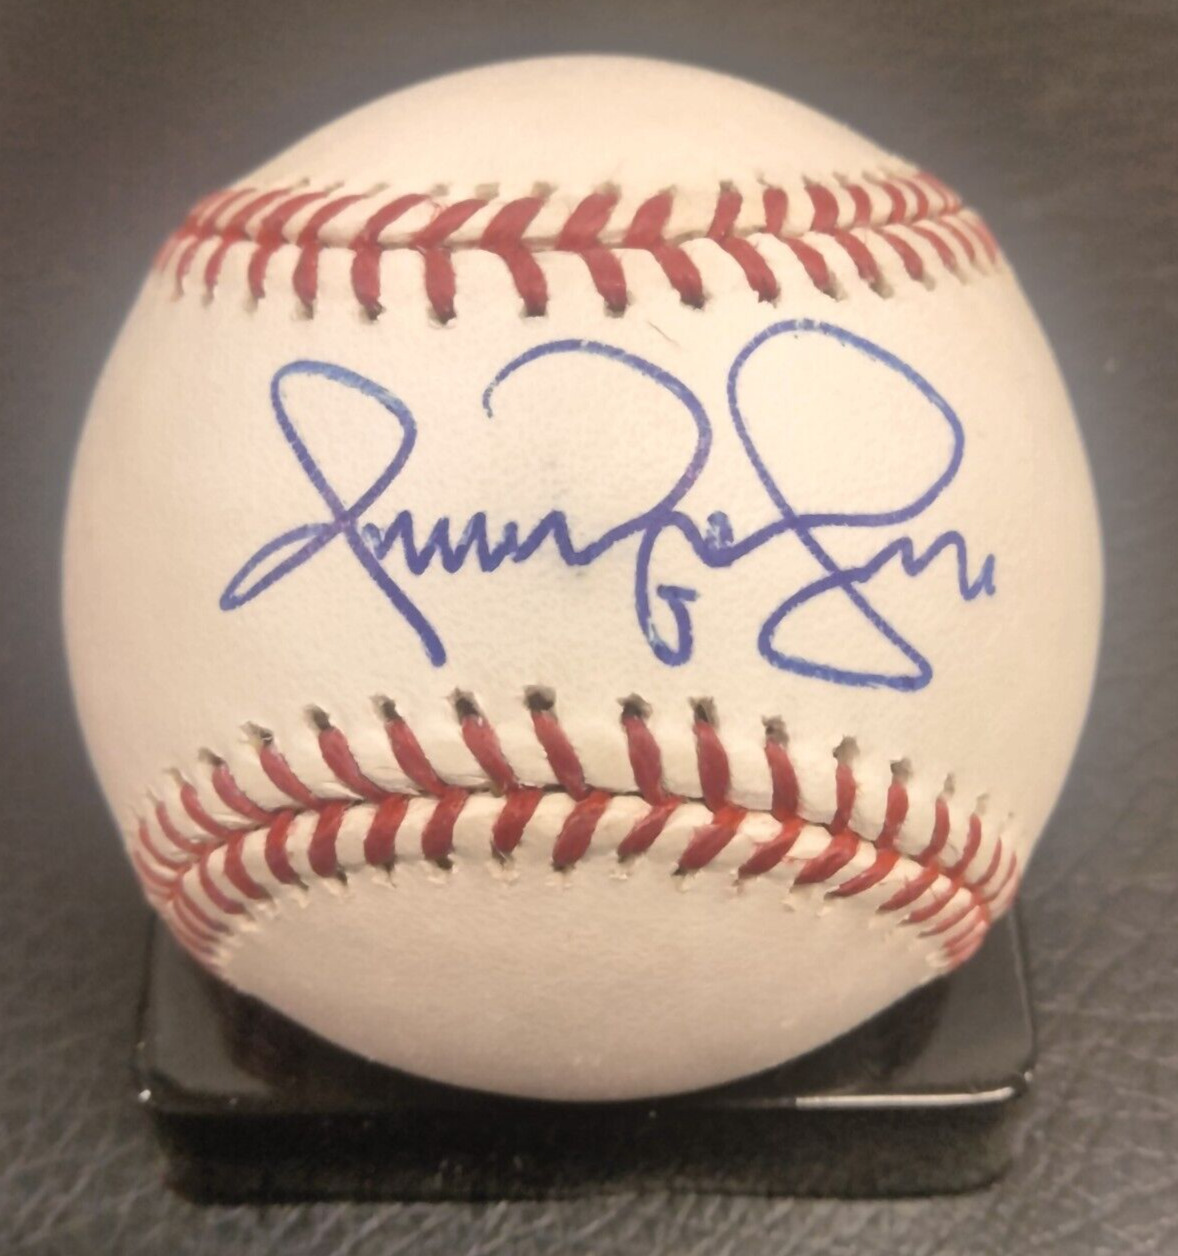 Omar Vizquel Autographed Rawlings MLB Bud Selig Baseball (BECKETT COA)